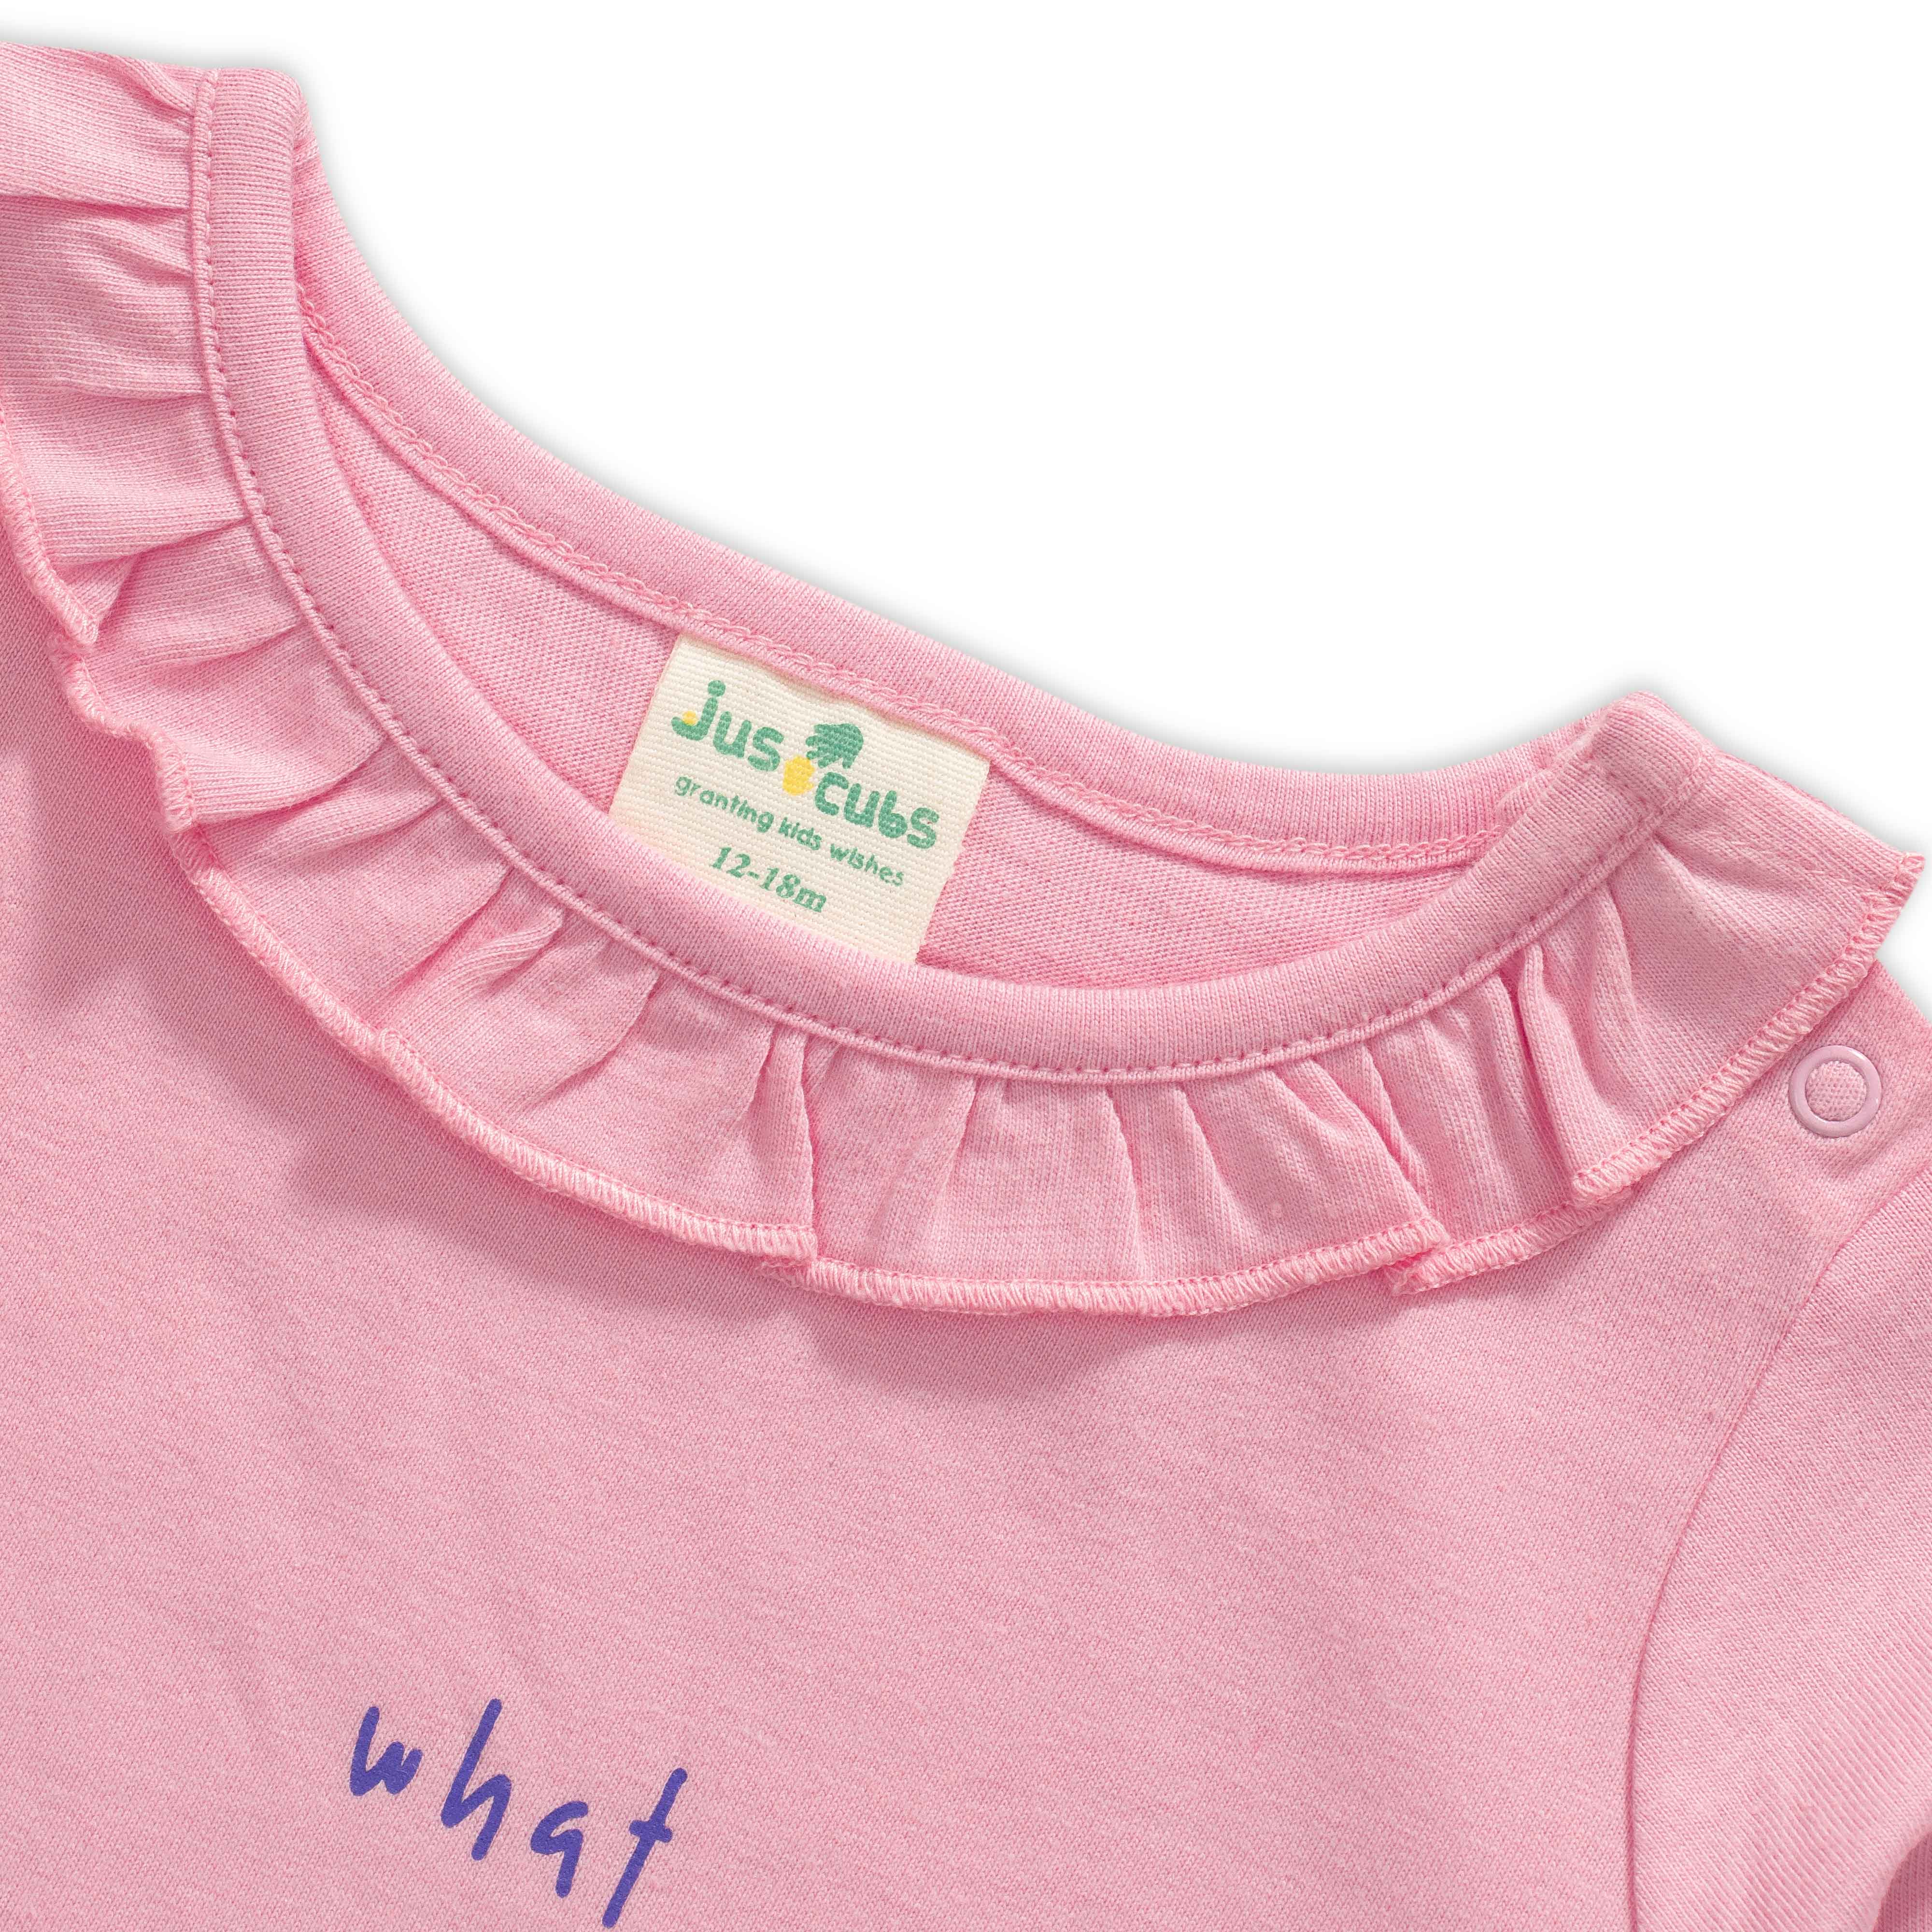 Baby Girls Graphic Printed T Shirt